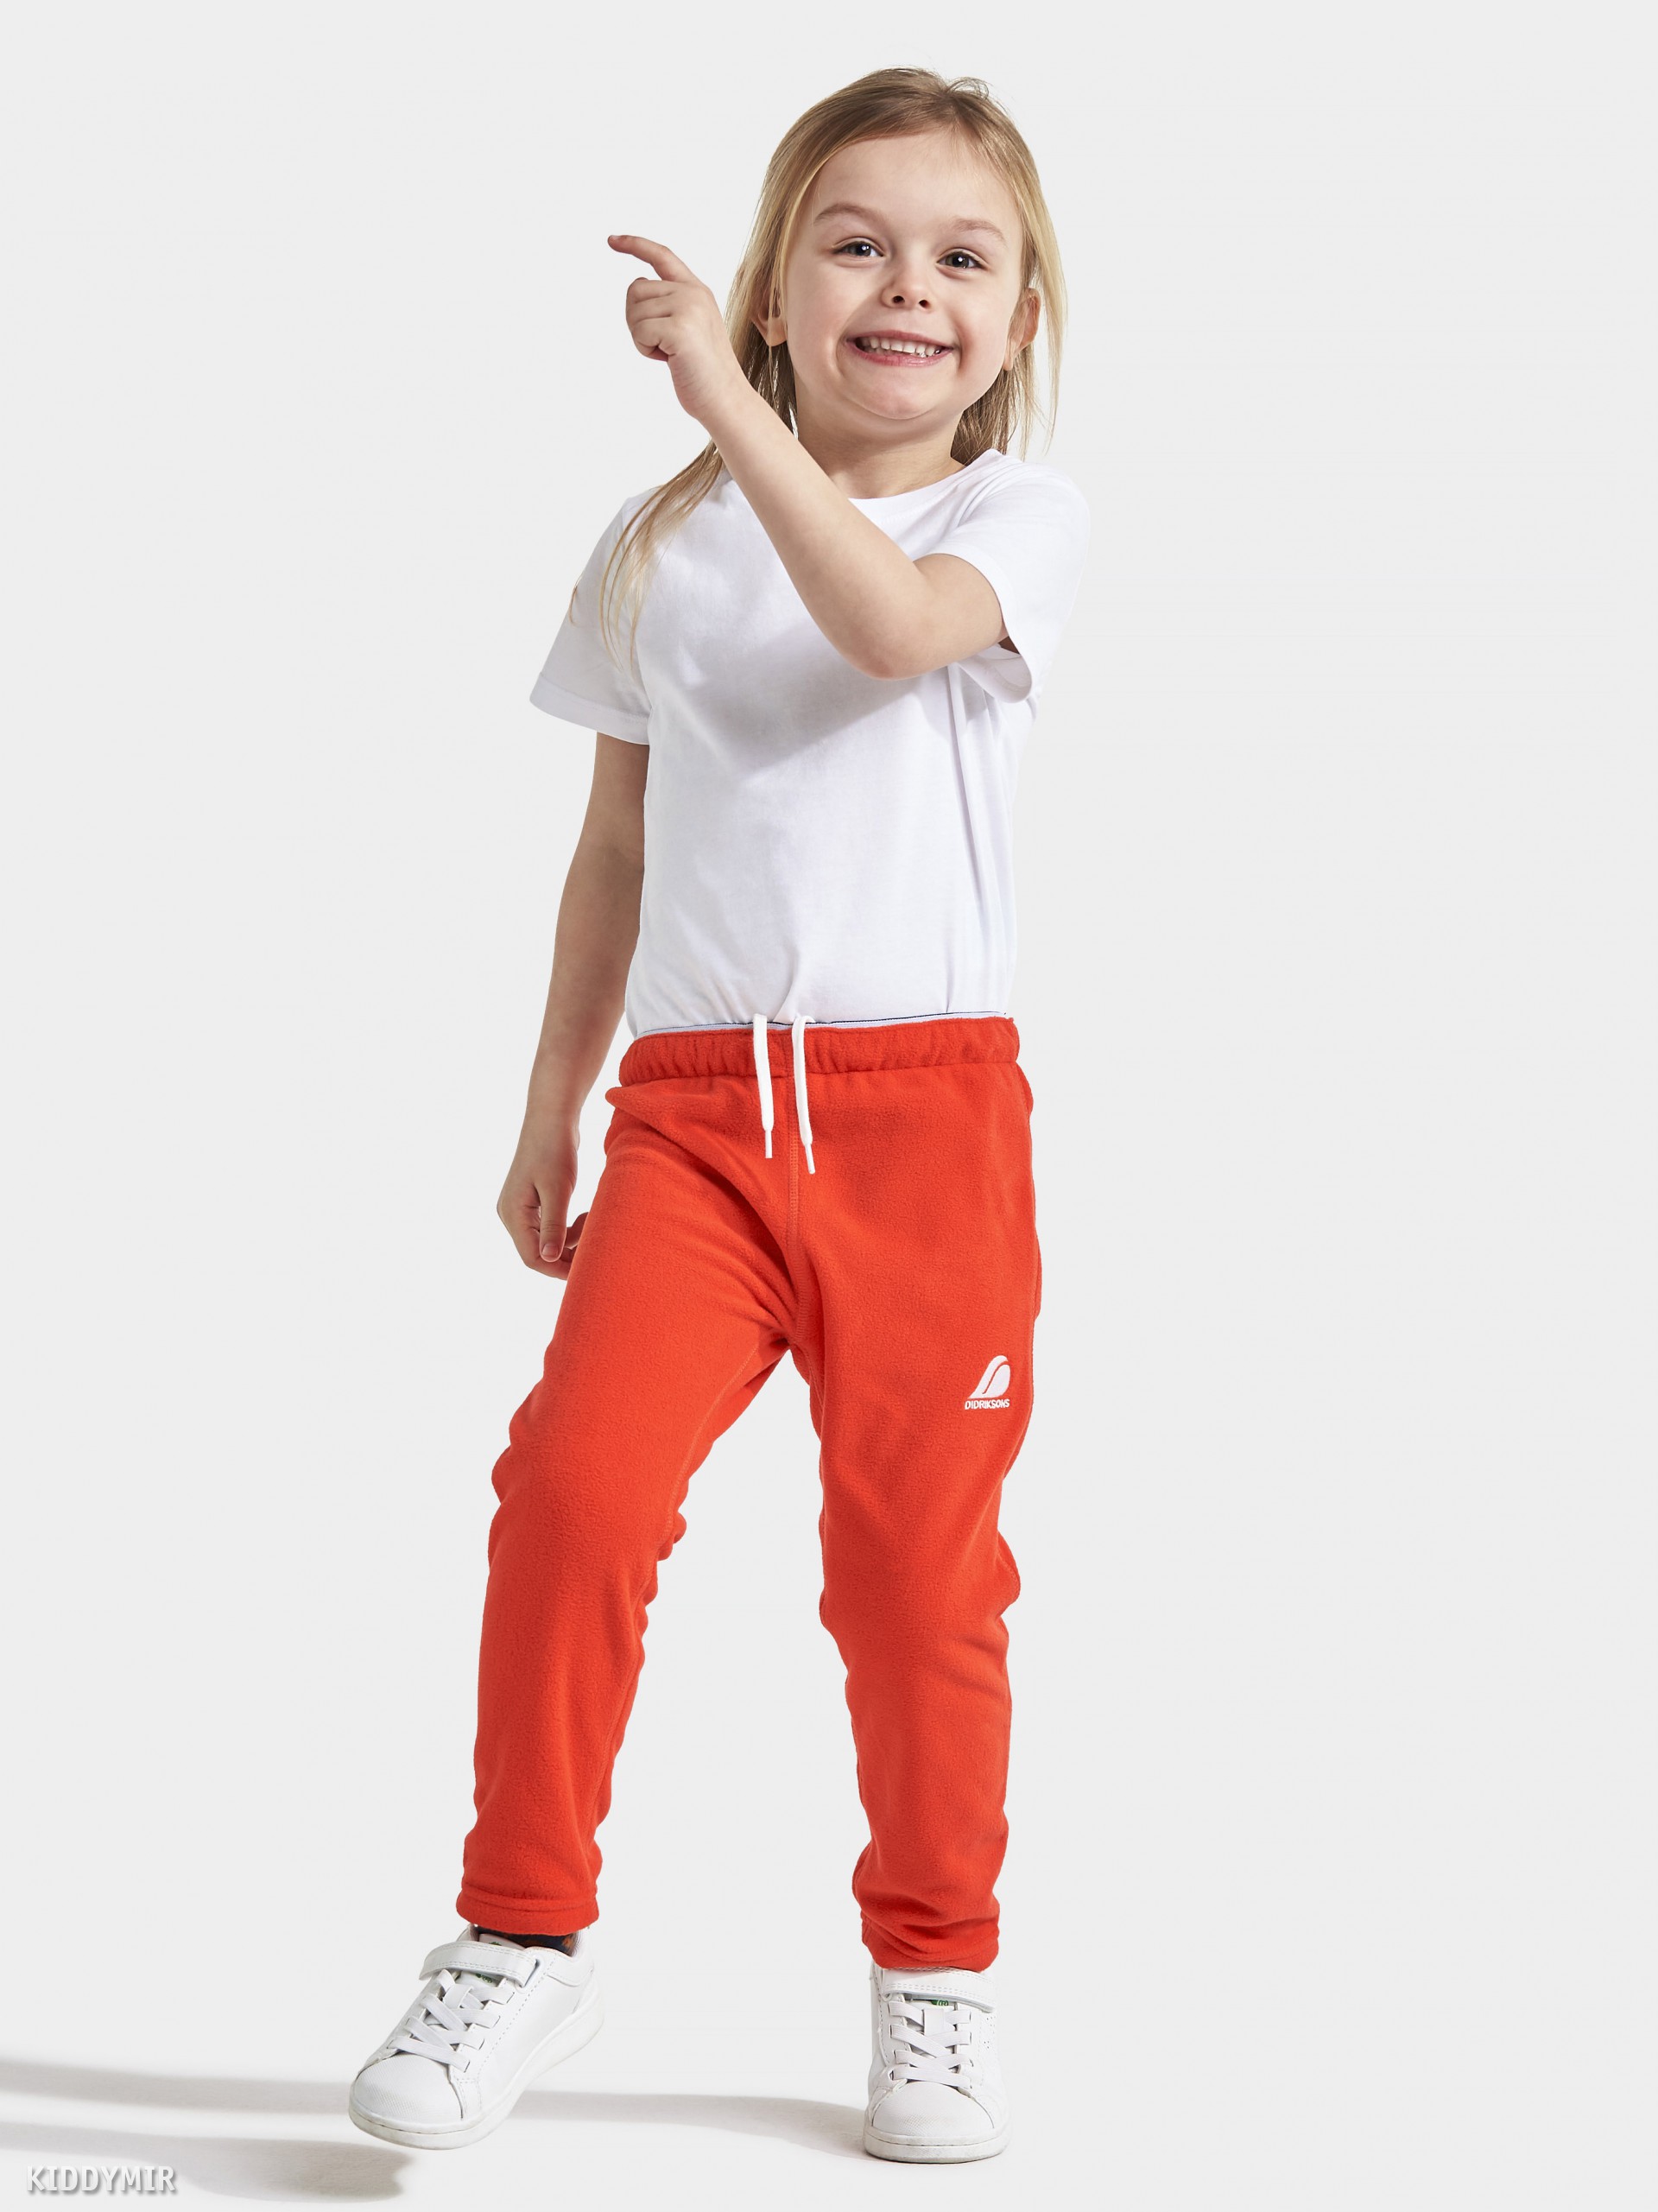 Didriksons Брюки для детей Monte Kids Fleece 503414(424) маково-оранжевыйна флисе – купить в Москве в магазине Kiddymir